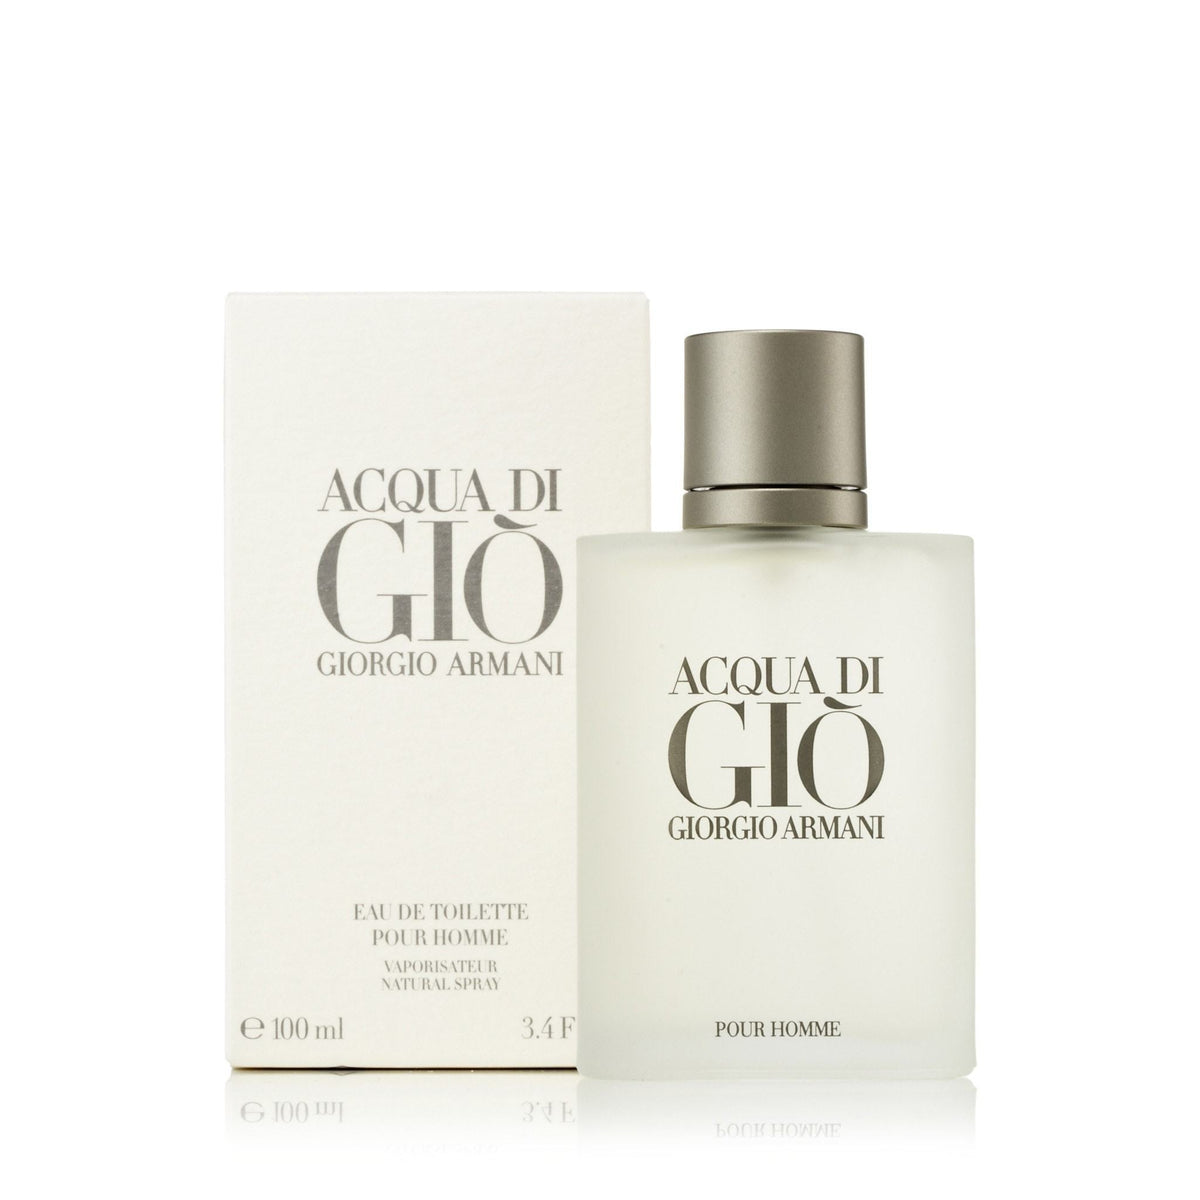 Giorgio Armani Acqua Di Gio Eau de Toilette Mens Spray 3.4 oz. with box and bottle